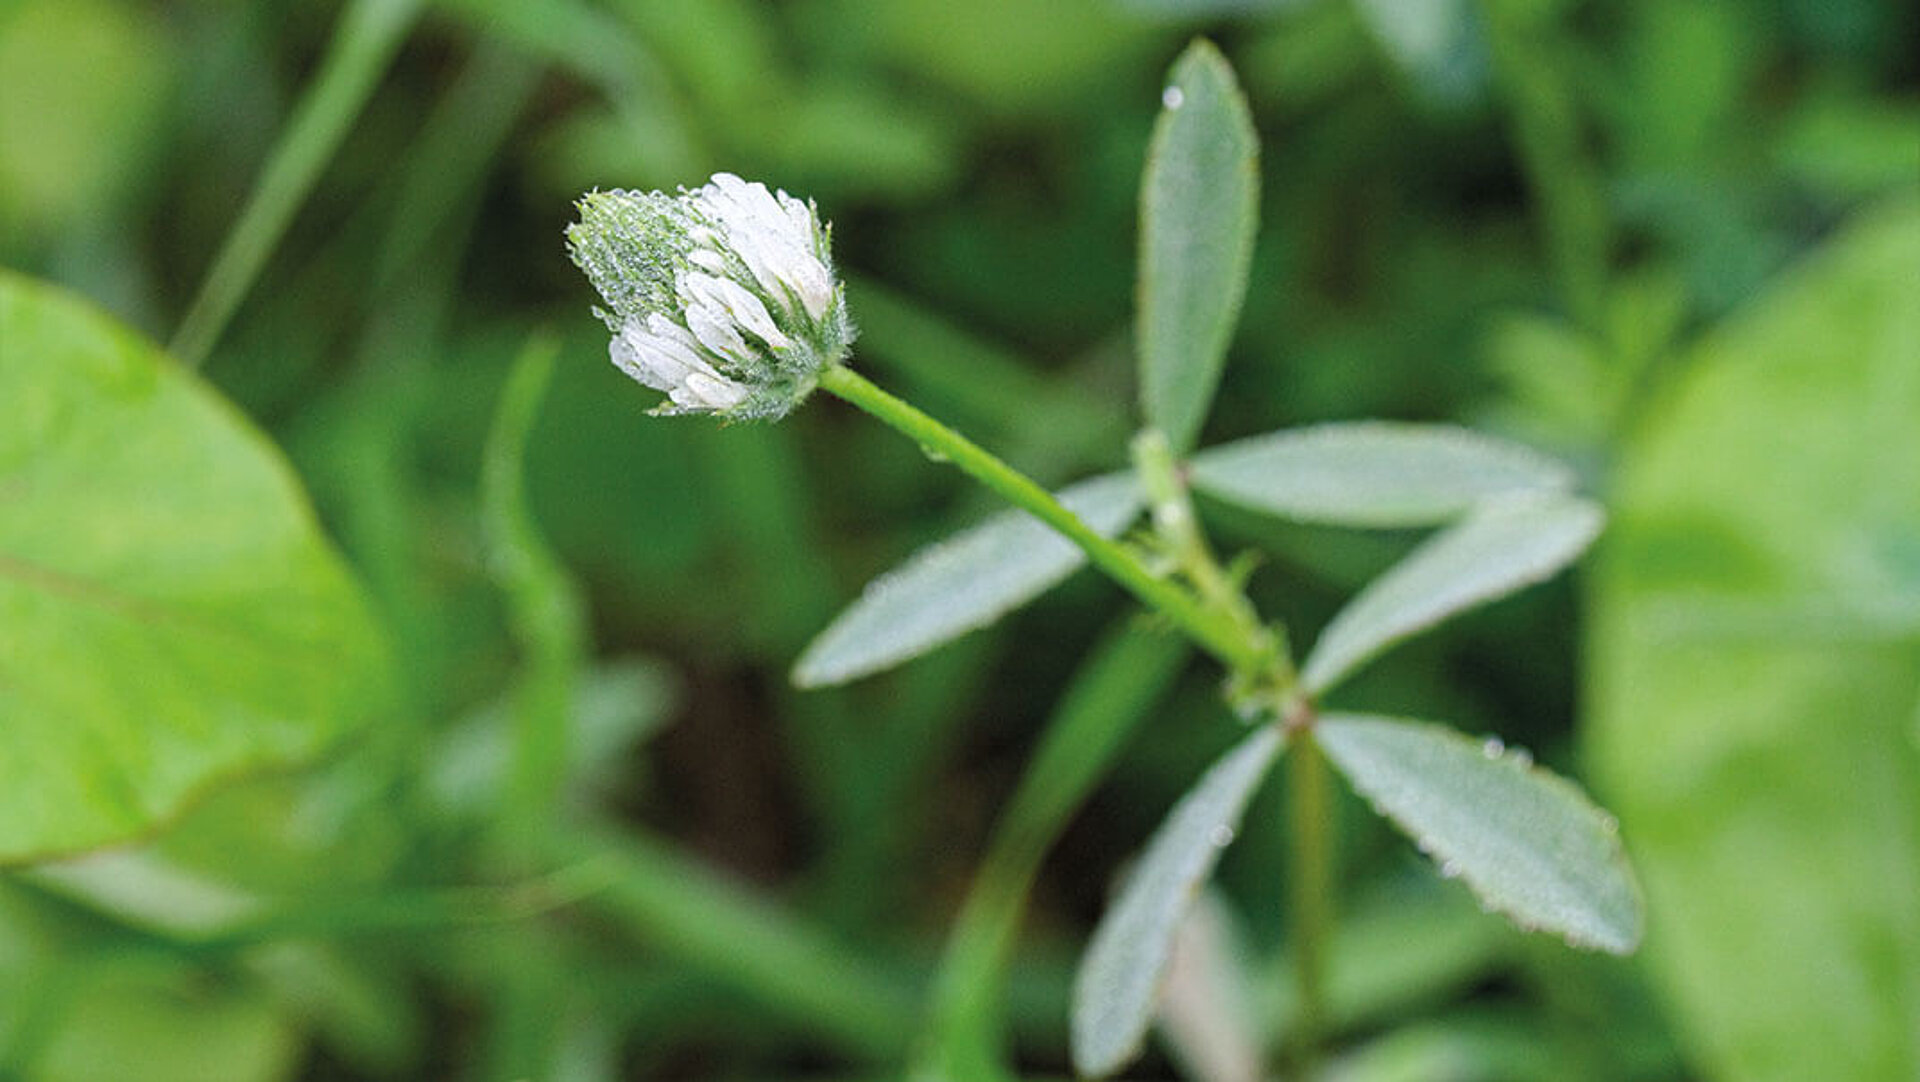 Im Fokus des Bildes steht eine Einzelpflanze – Sparriger Klee- mit weißer Blüte.